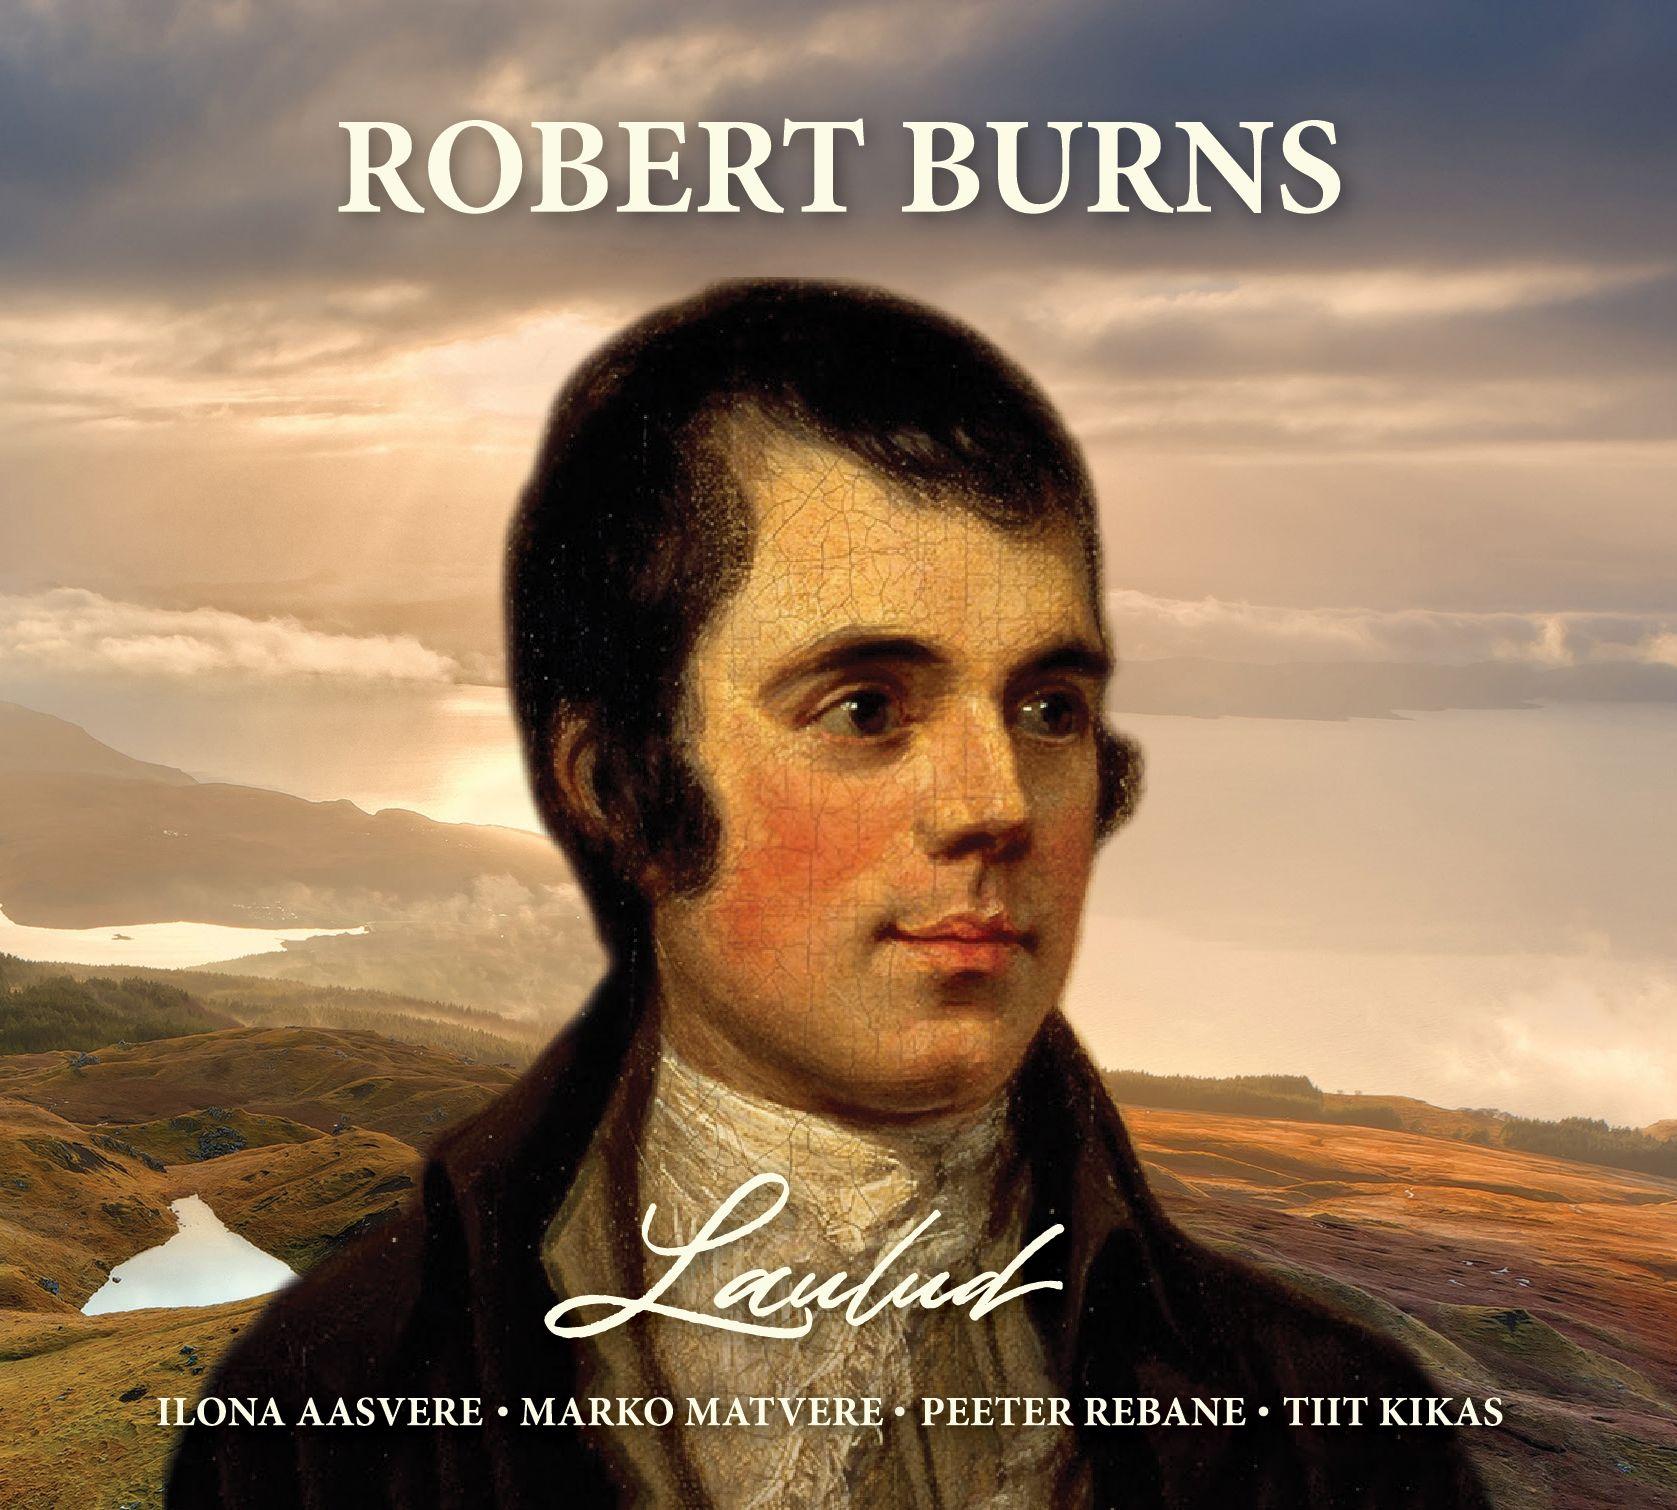 ROBERT BURNS - LAULUD (2020) CD